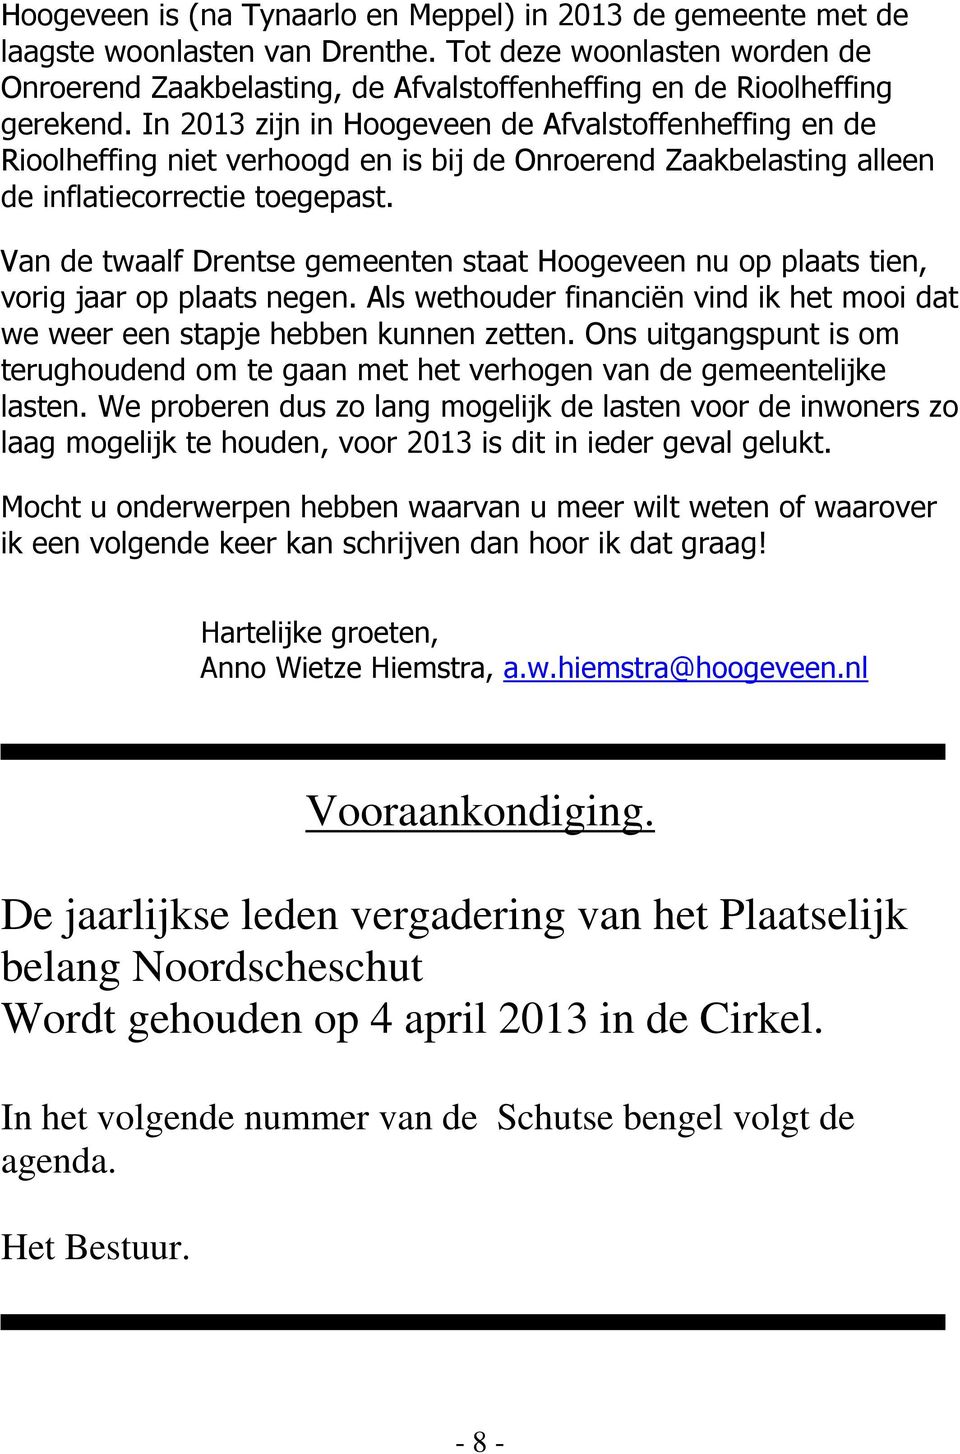 In 2013 zijn in Hoogeveen de Afvalstoffenheffing en de Rioolheffing niet verhoogd en is bij de Onroerend Zaakbelasting alleen de inflatiecorrectie toegepast.